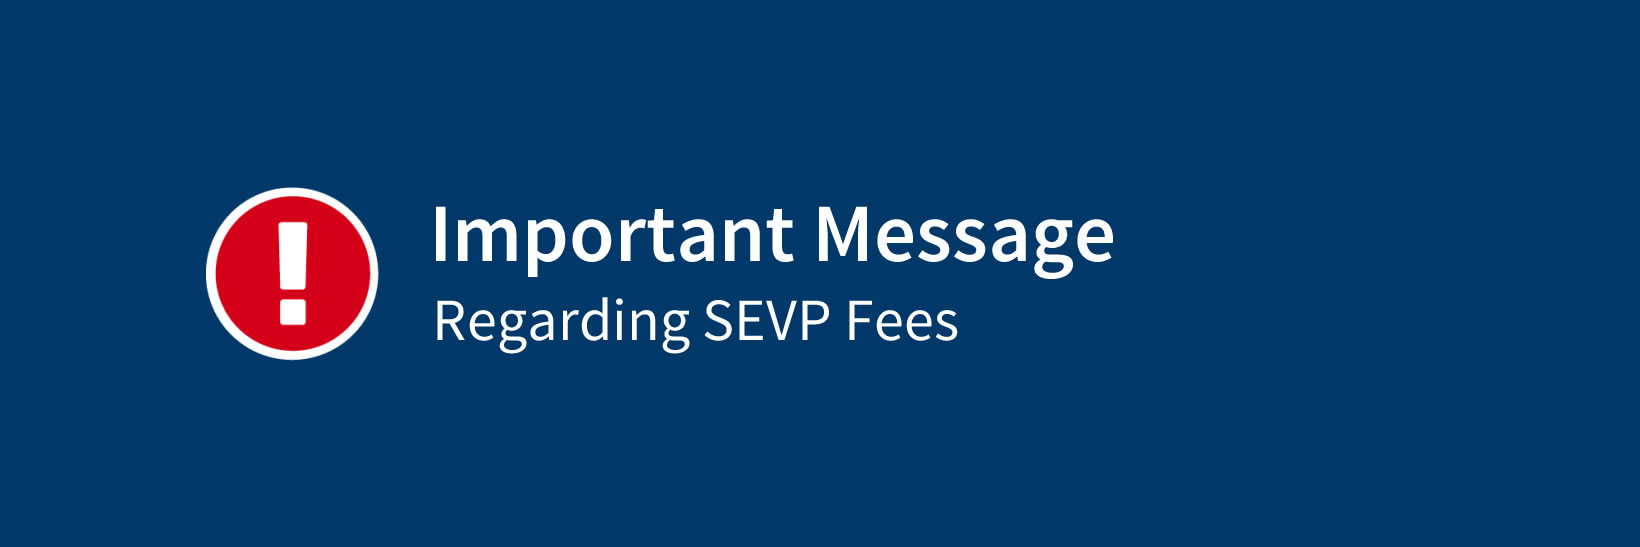 Important message regarding SEVP fees